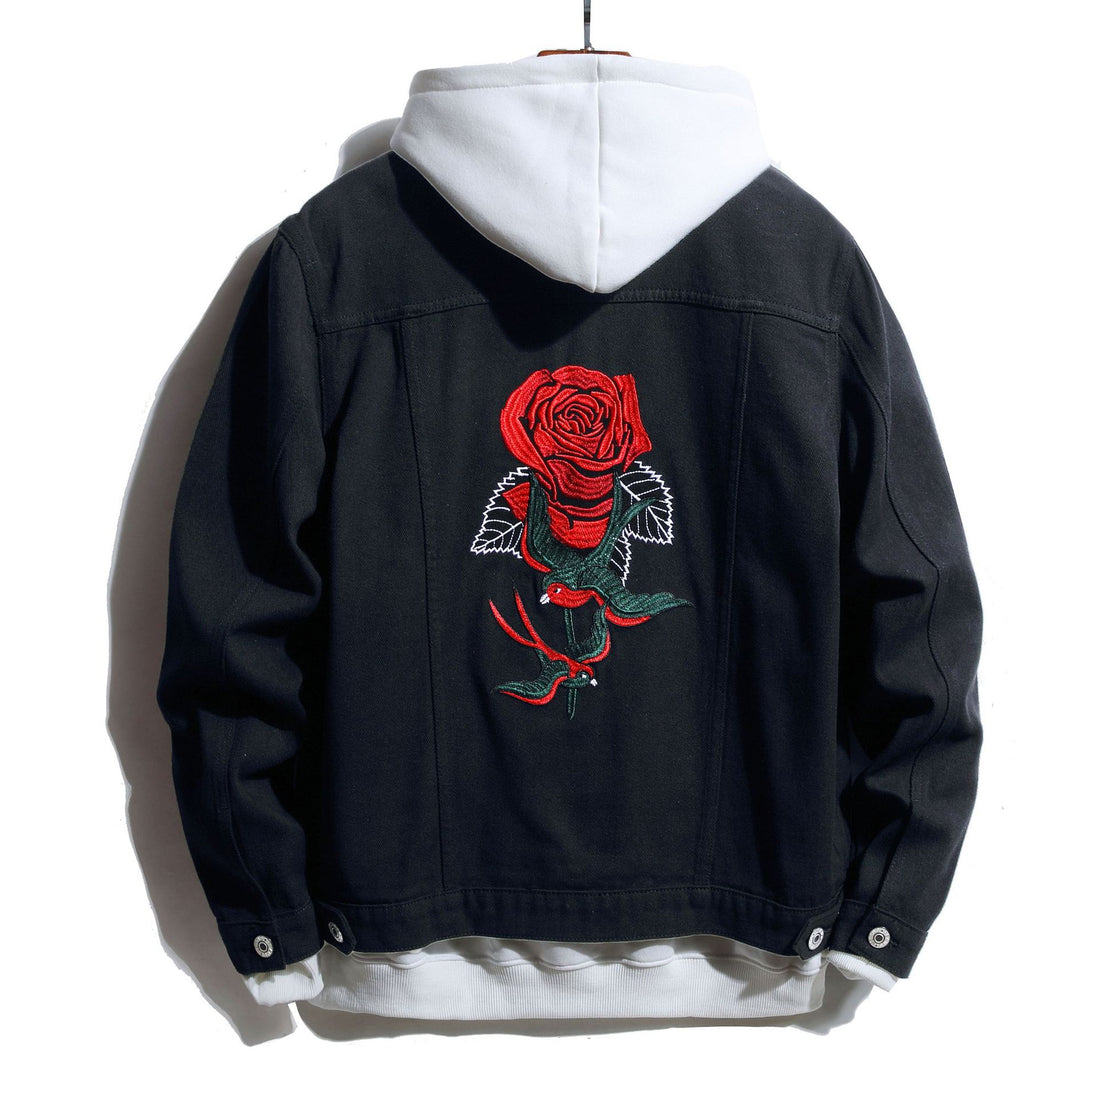 Embroidered Denim Jacket Black Rose